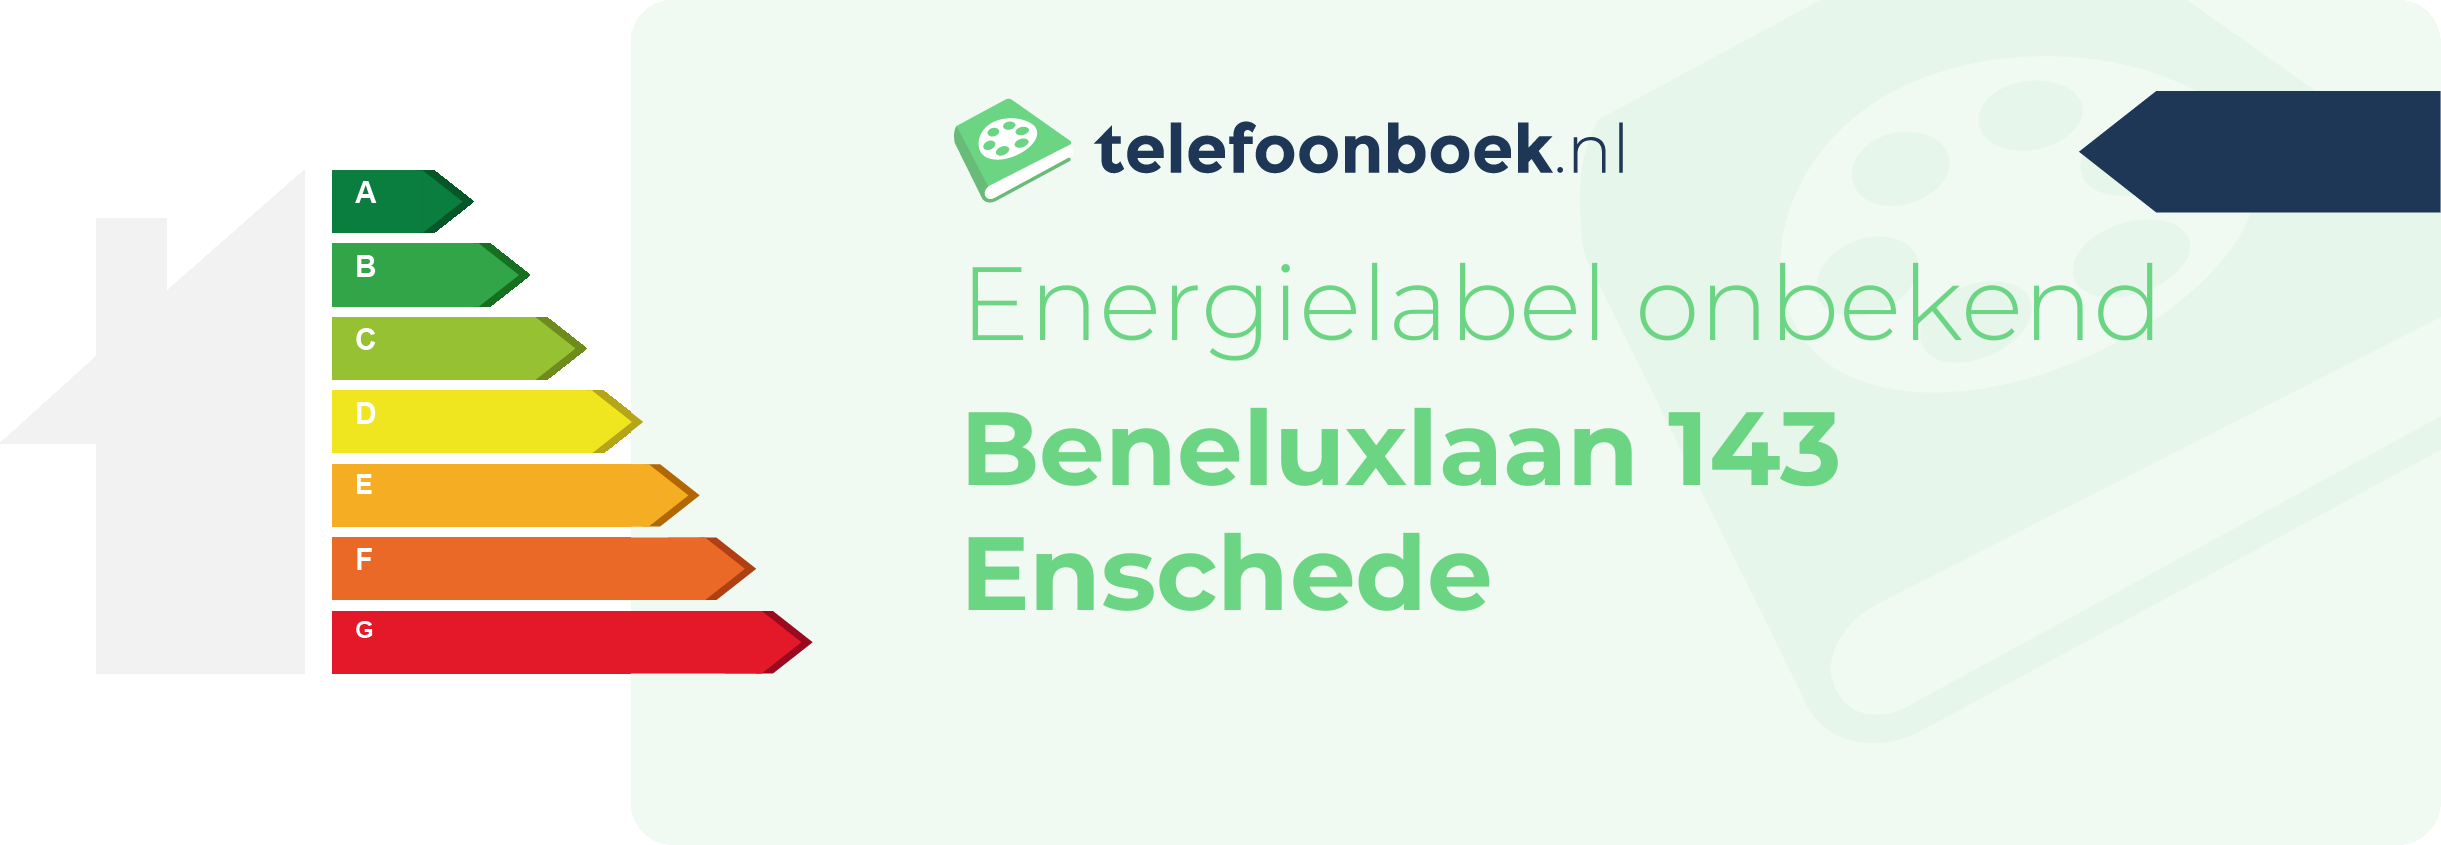 Energielabel Beneluxlaan 143 Enschede